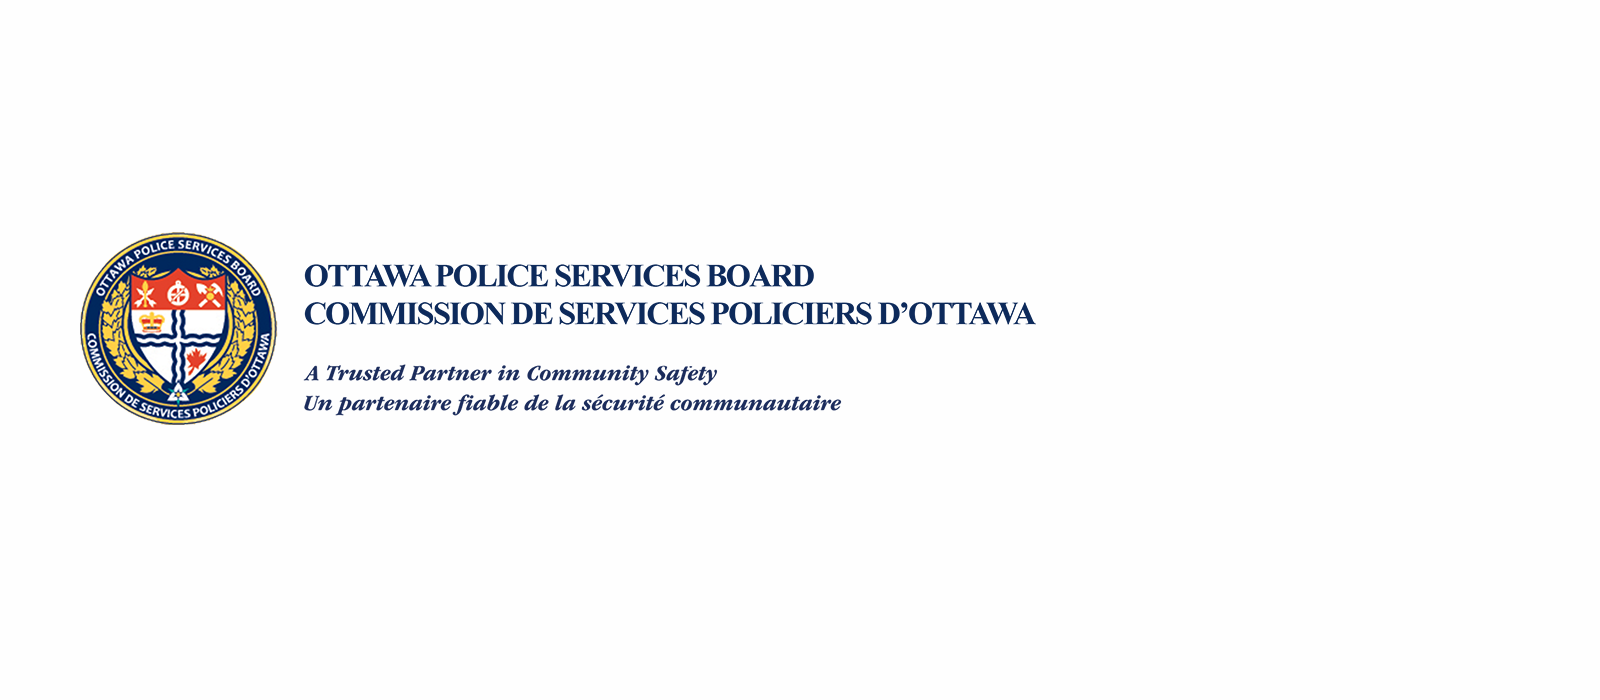 Commission de services policier d'Ottawa